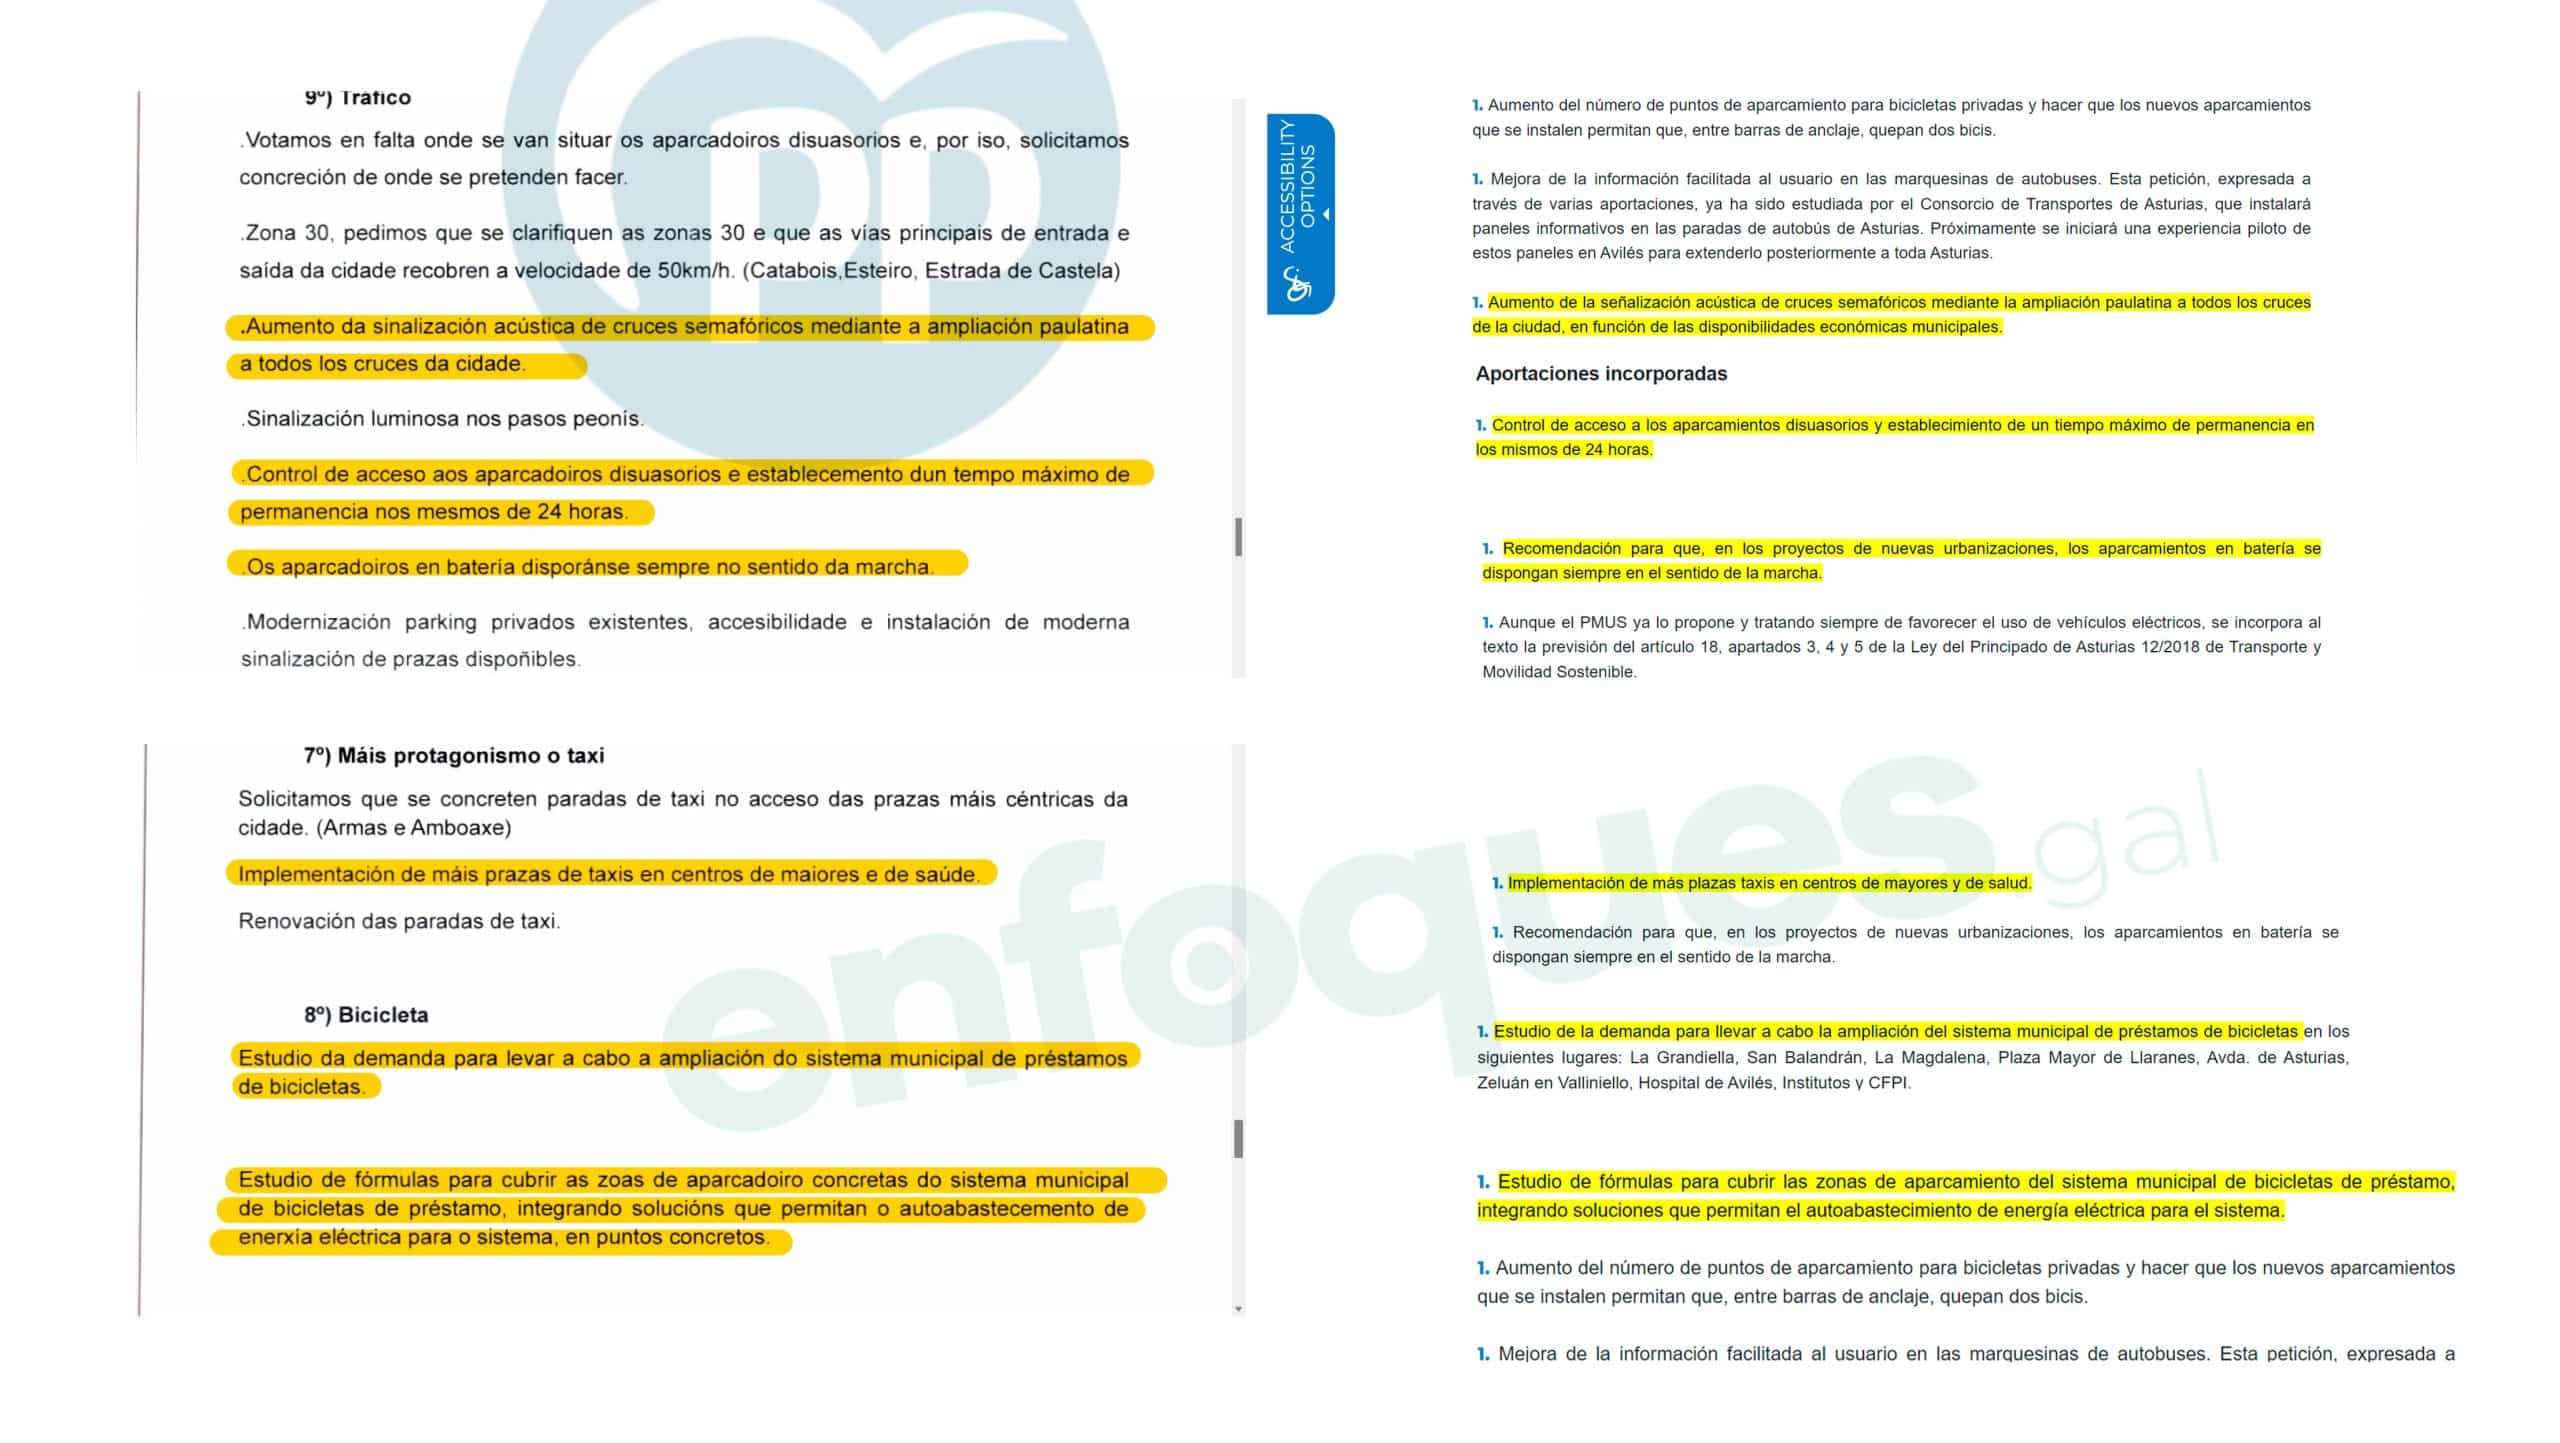 Comparación del documento presentado por el Partido Popular de Ferrol (izquierda) y los mismos puntos recogidos en el PMUS de Avilés (derecha) | ENFOQUES